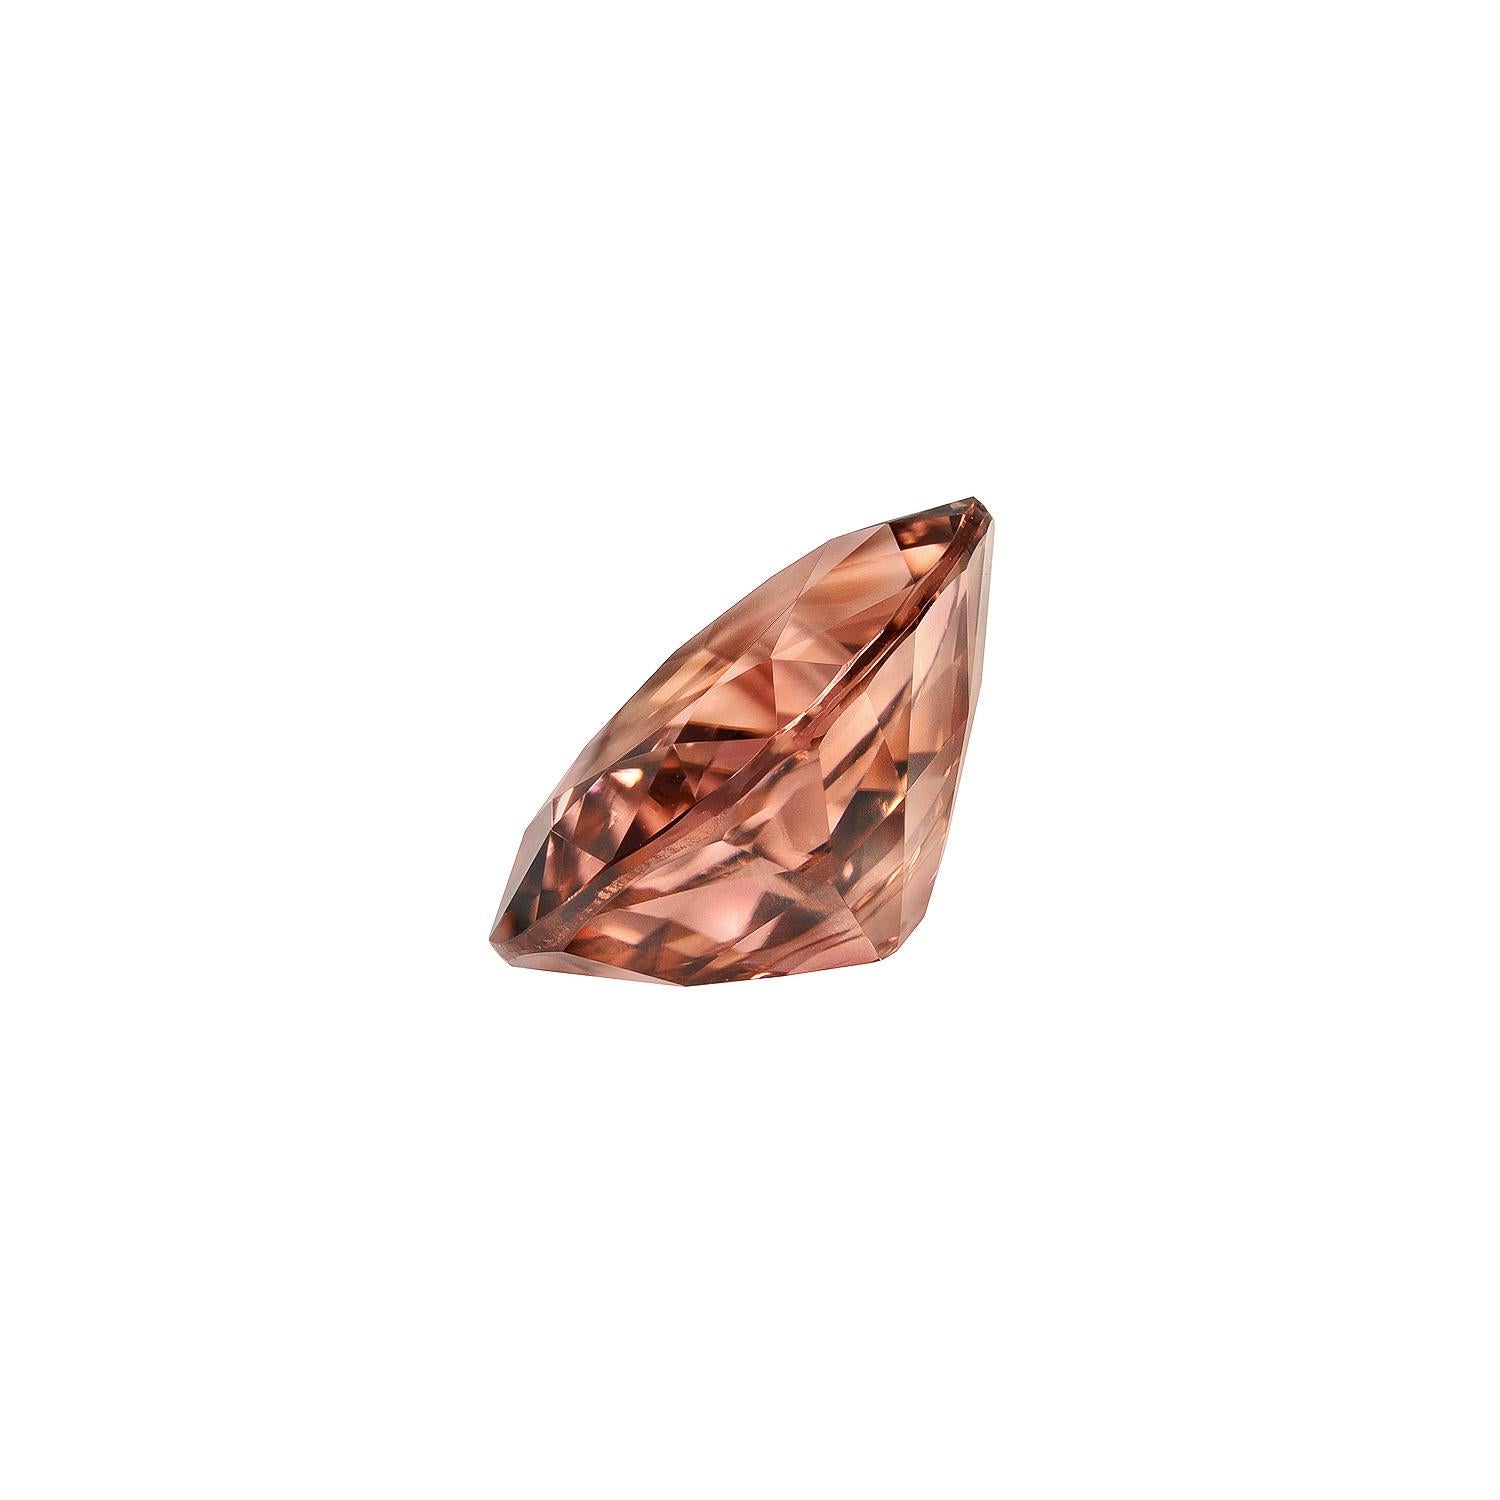 Contemporary Pink Tourmaline Ring Gem 4.62 Carat Cushion Loose Gemstone